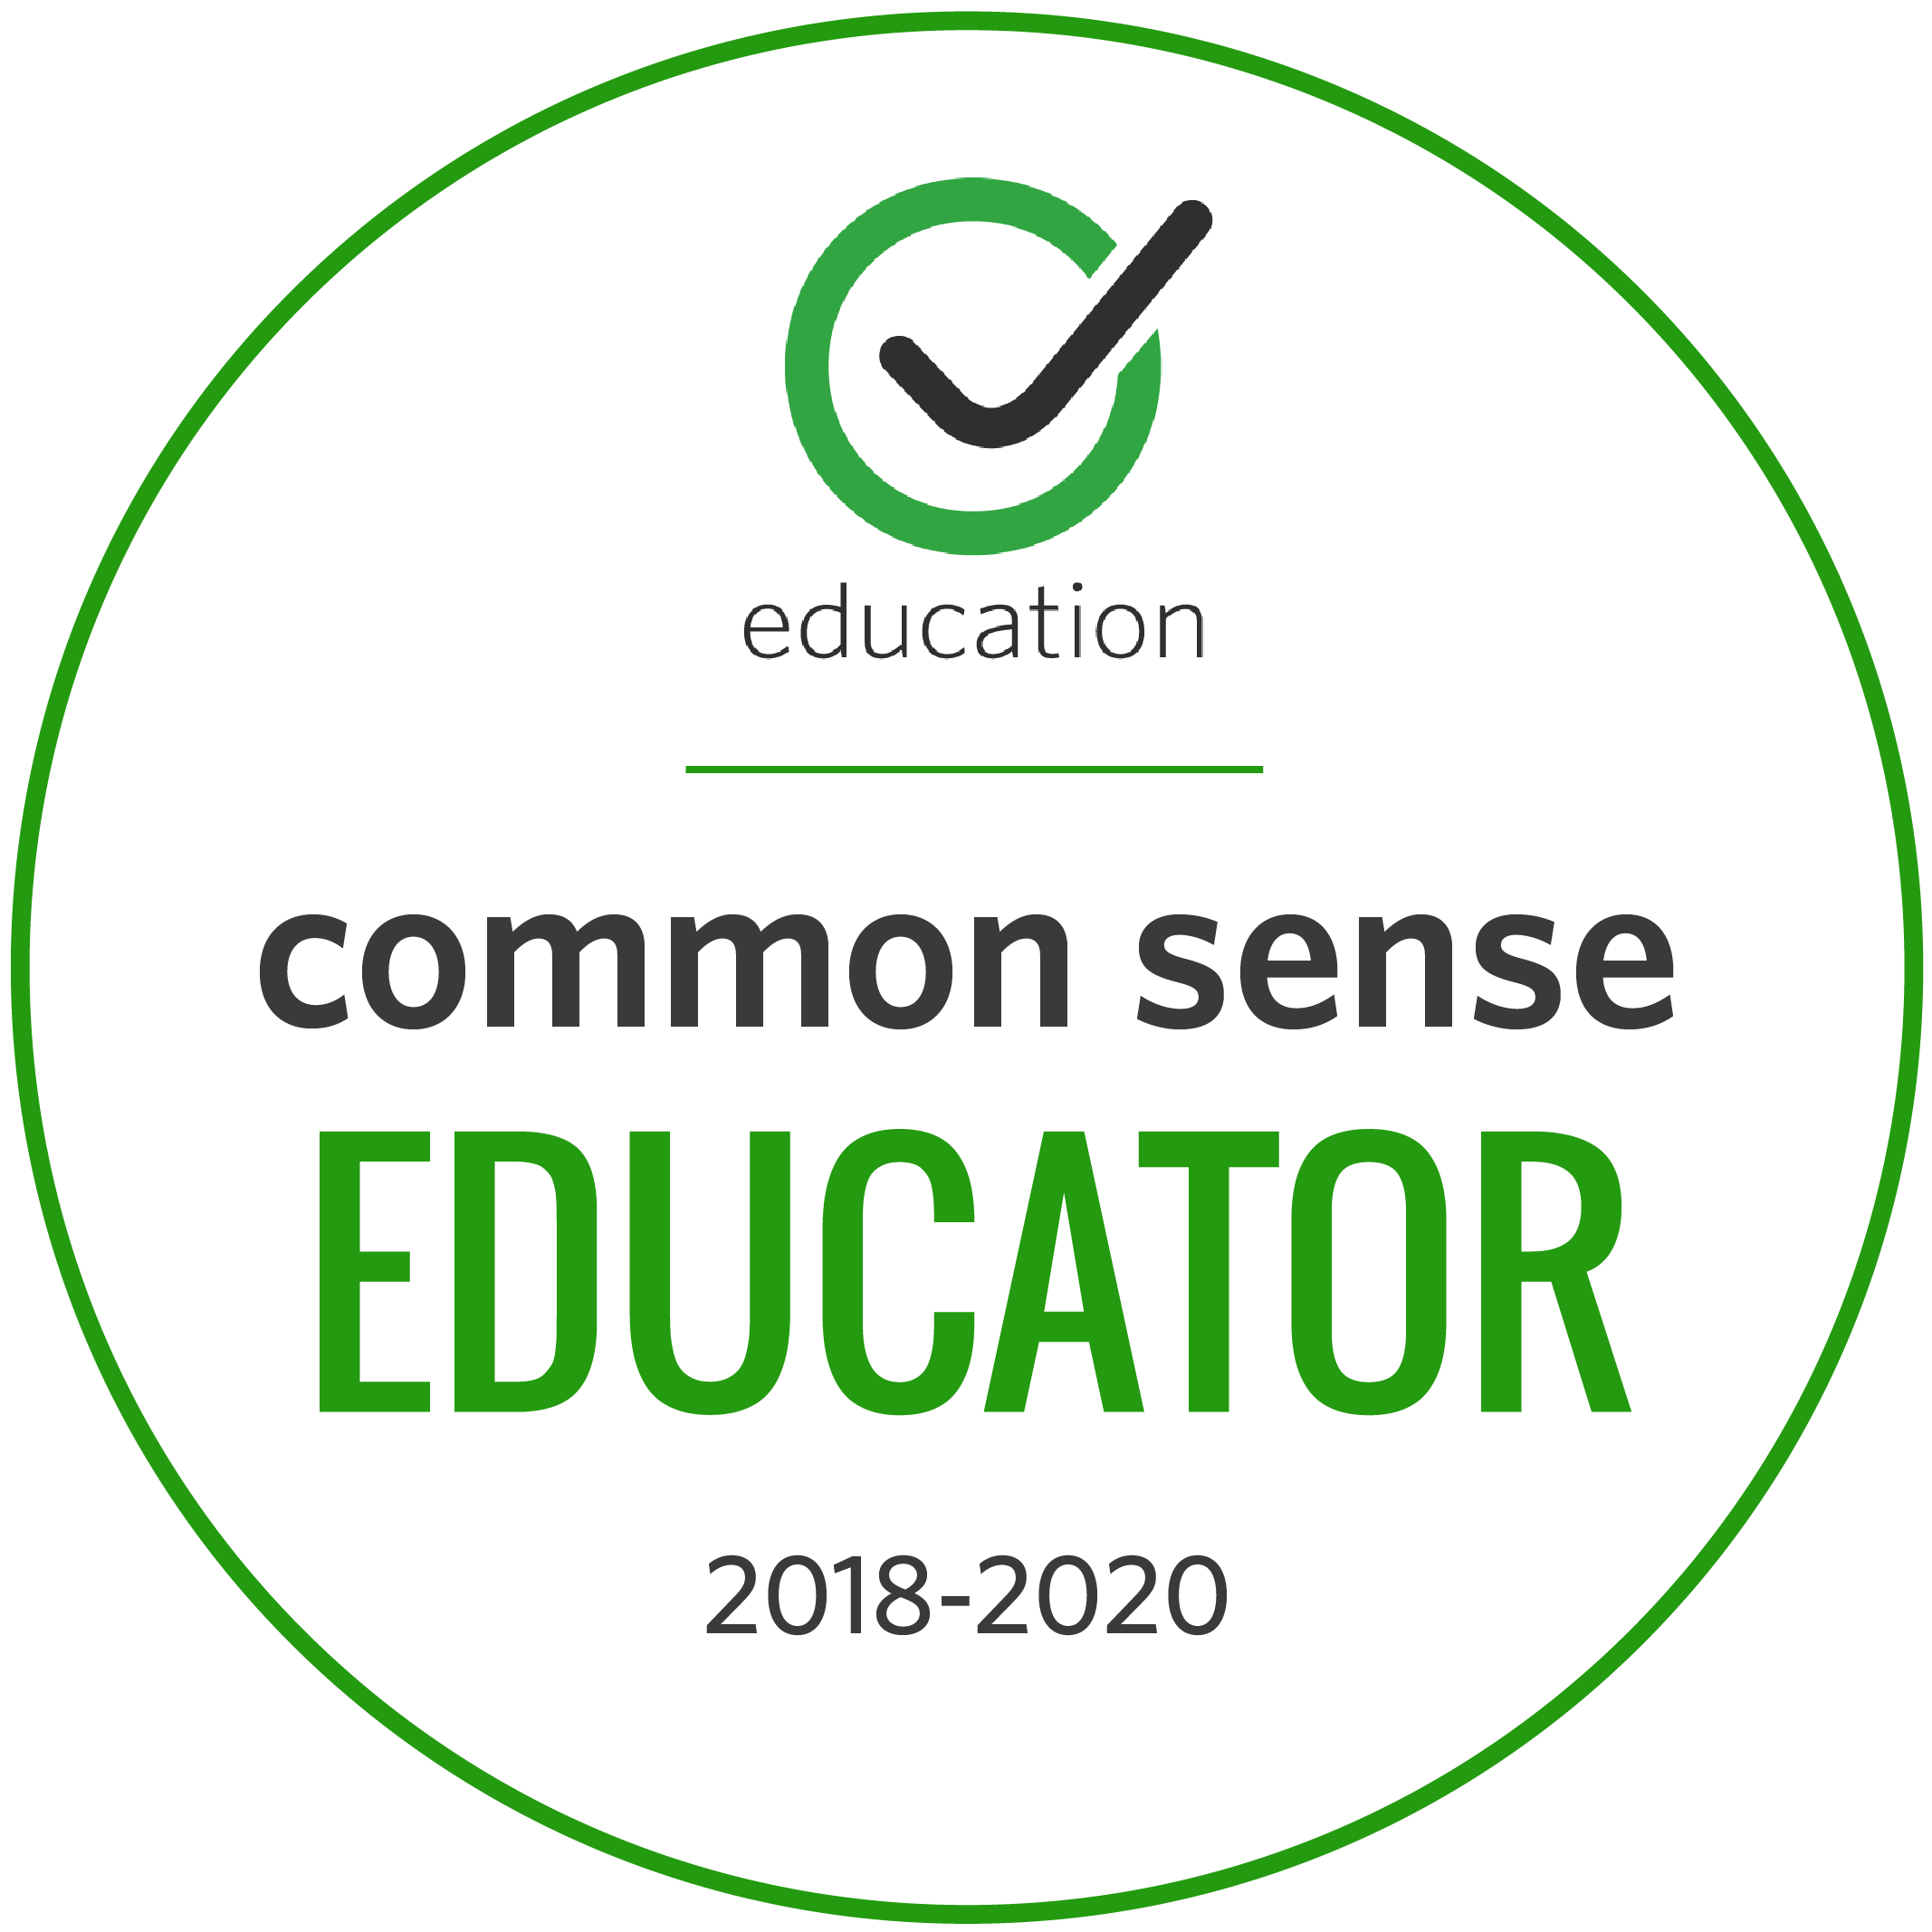 EducatorBadge2018-2020.png